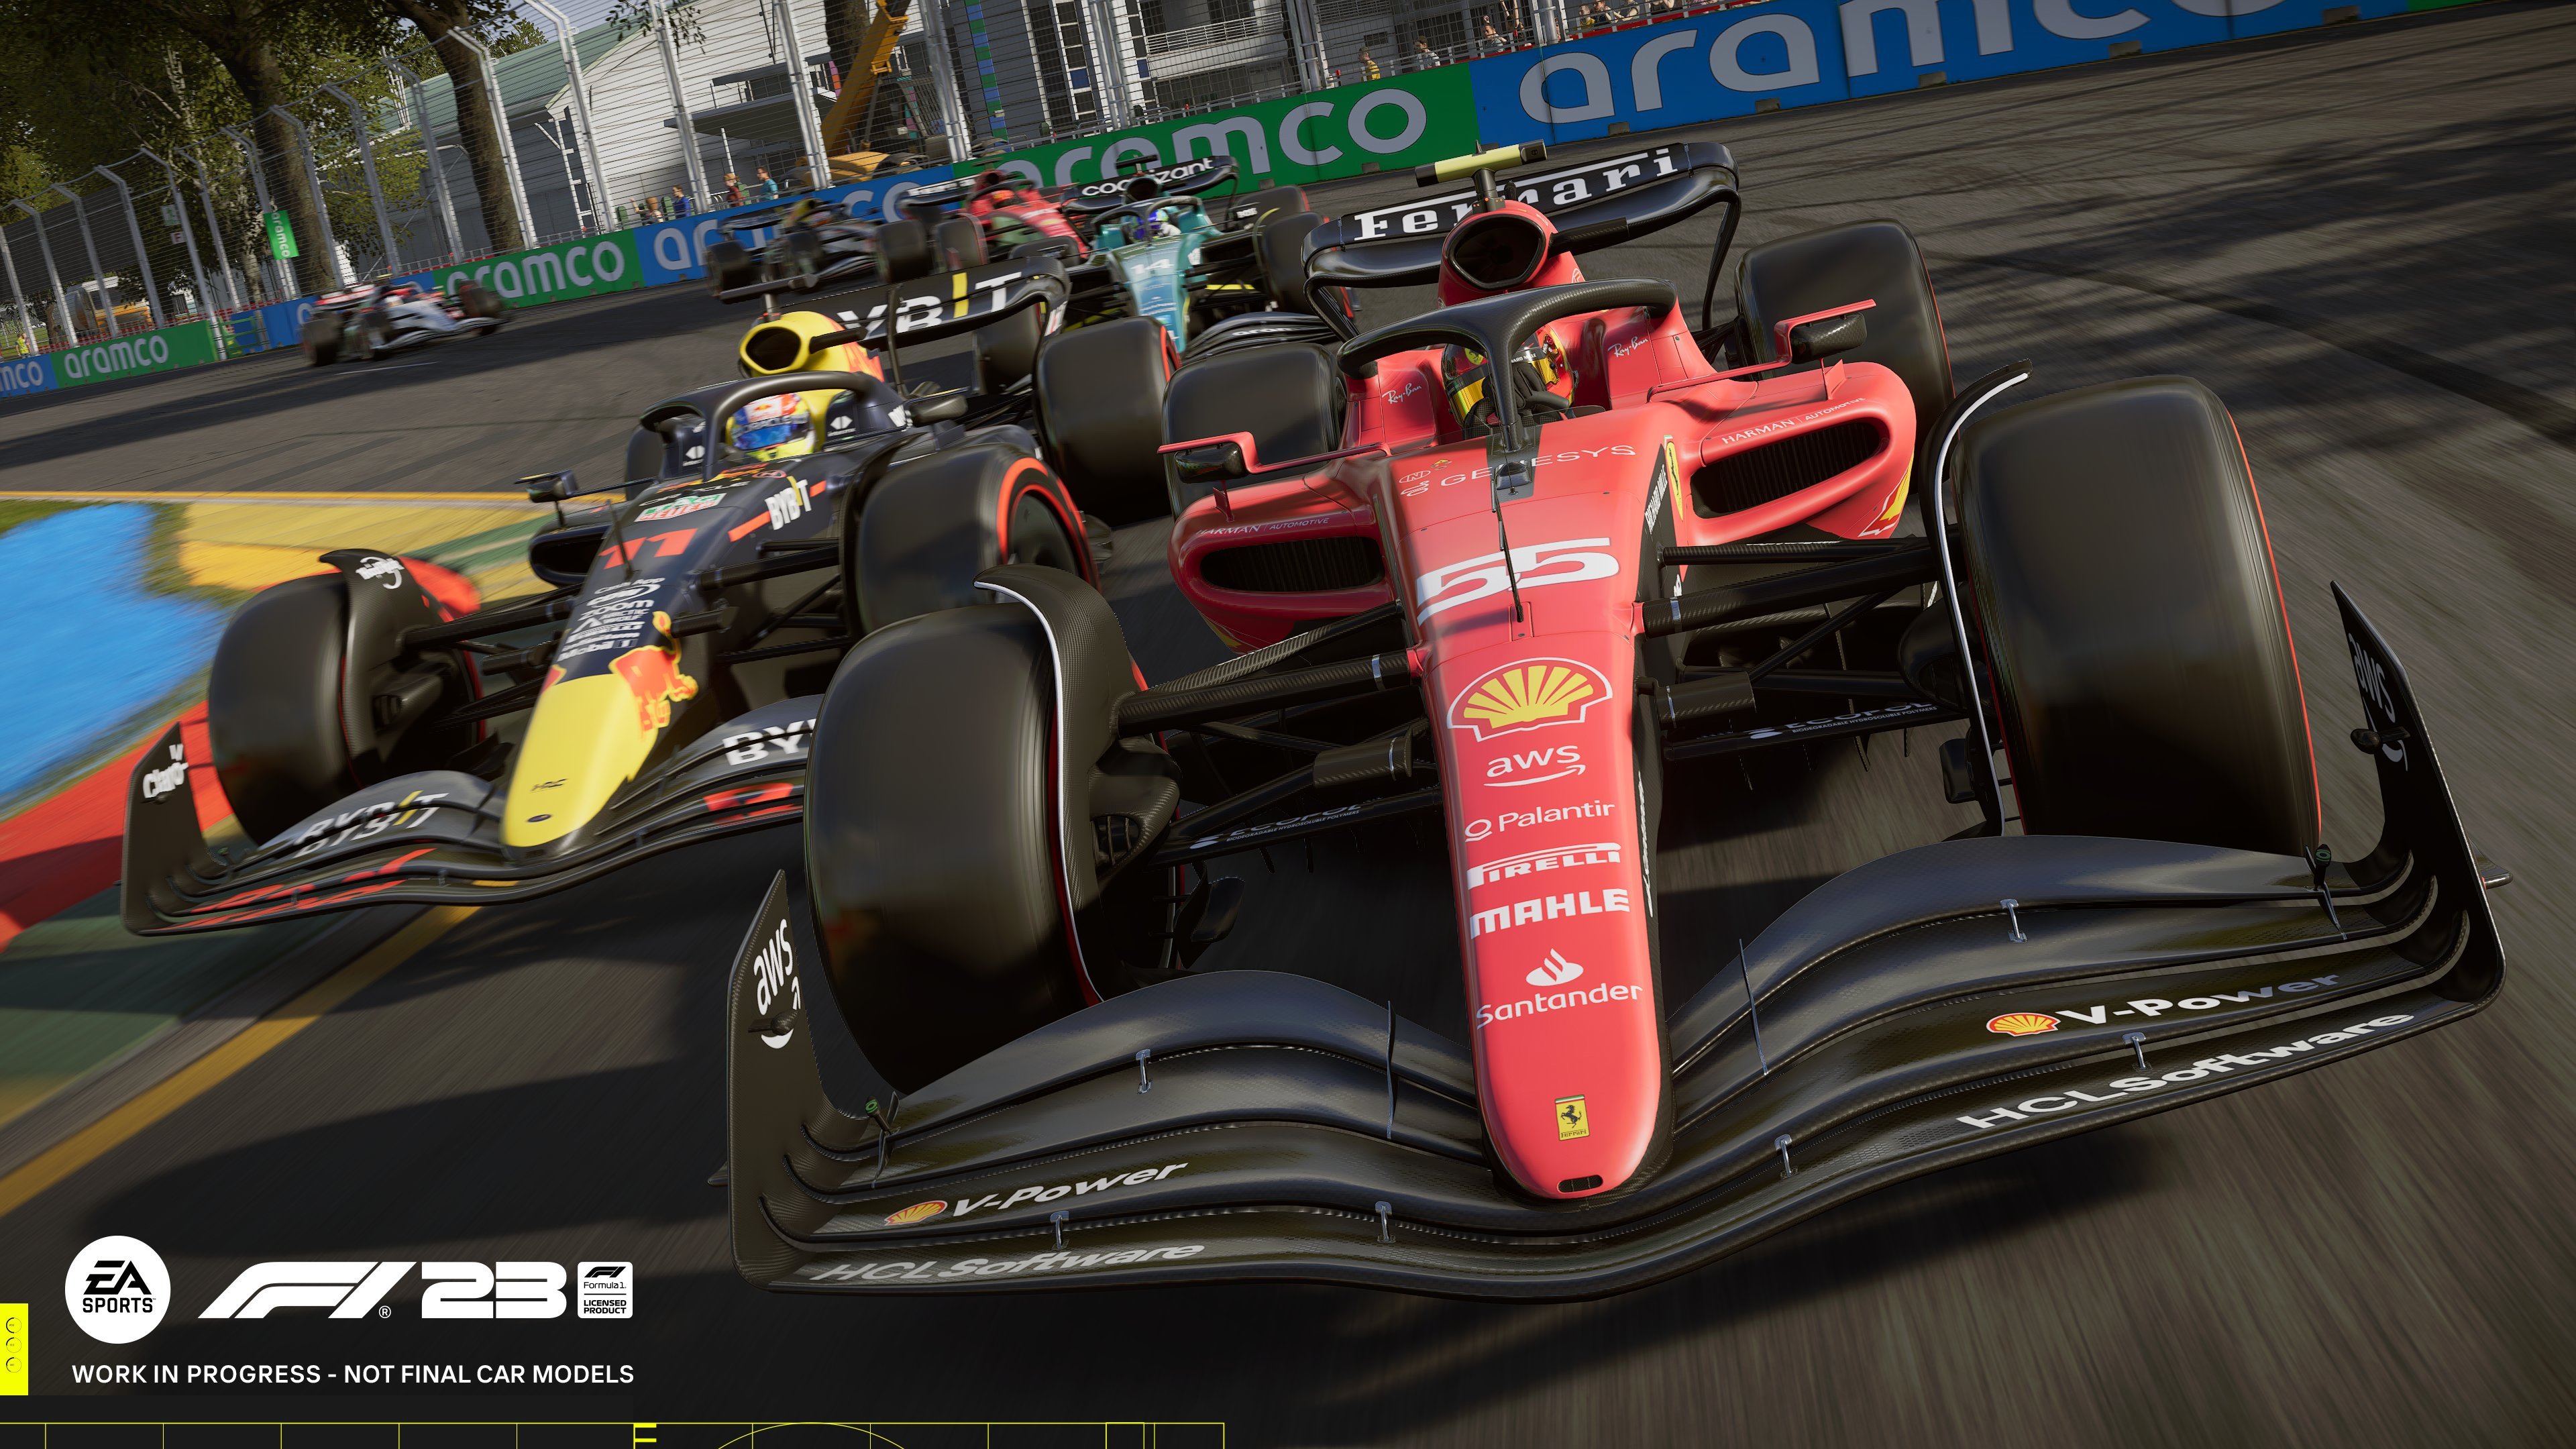 More information about "Nuova chiamata per il beta testing pubblico di F1 23 EA Sports"